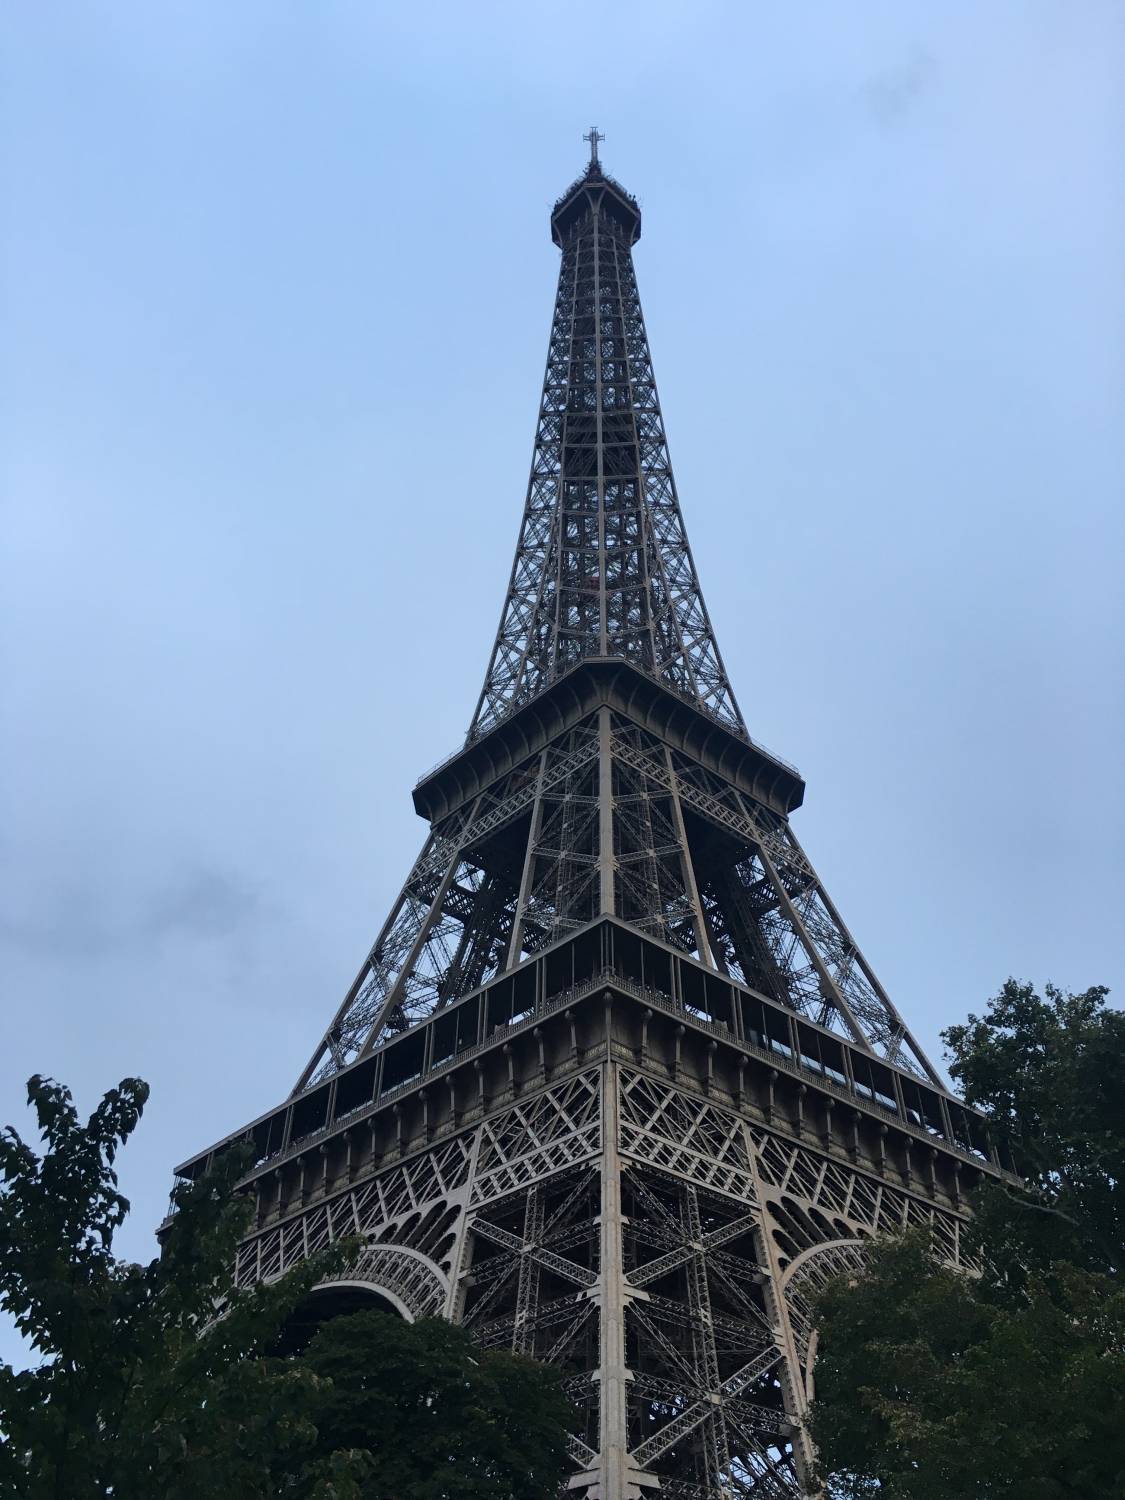 La Tour Eiffel - My Favs During Paris Design Week 2016 - Flodeau.com